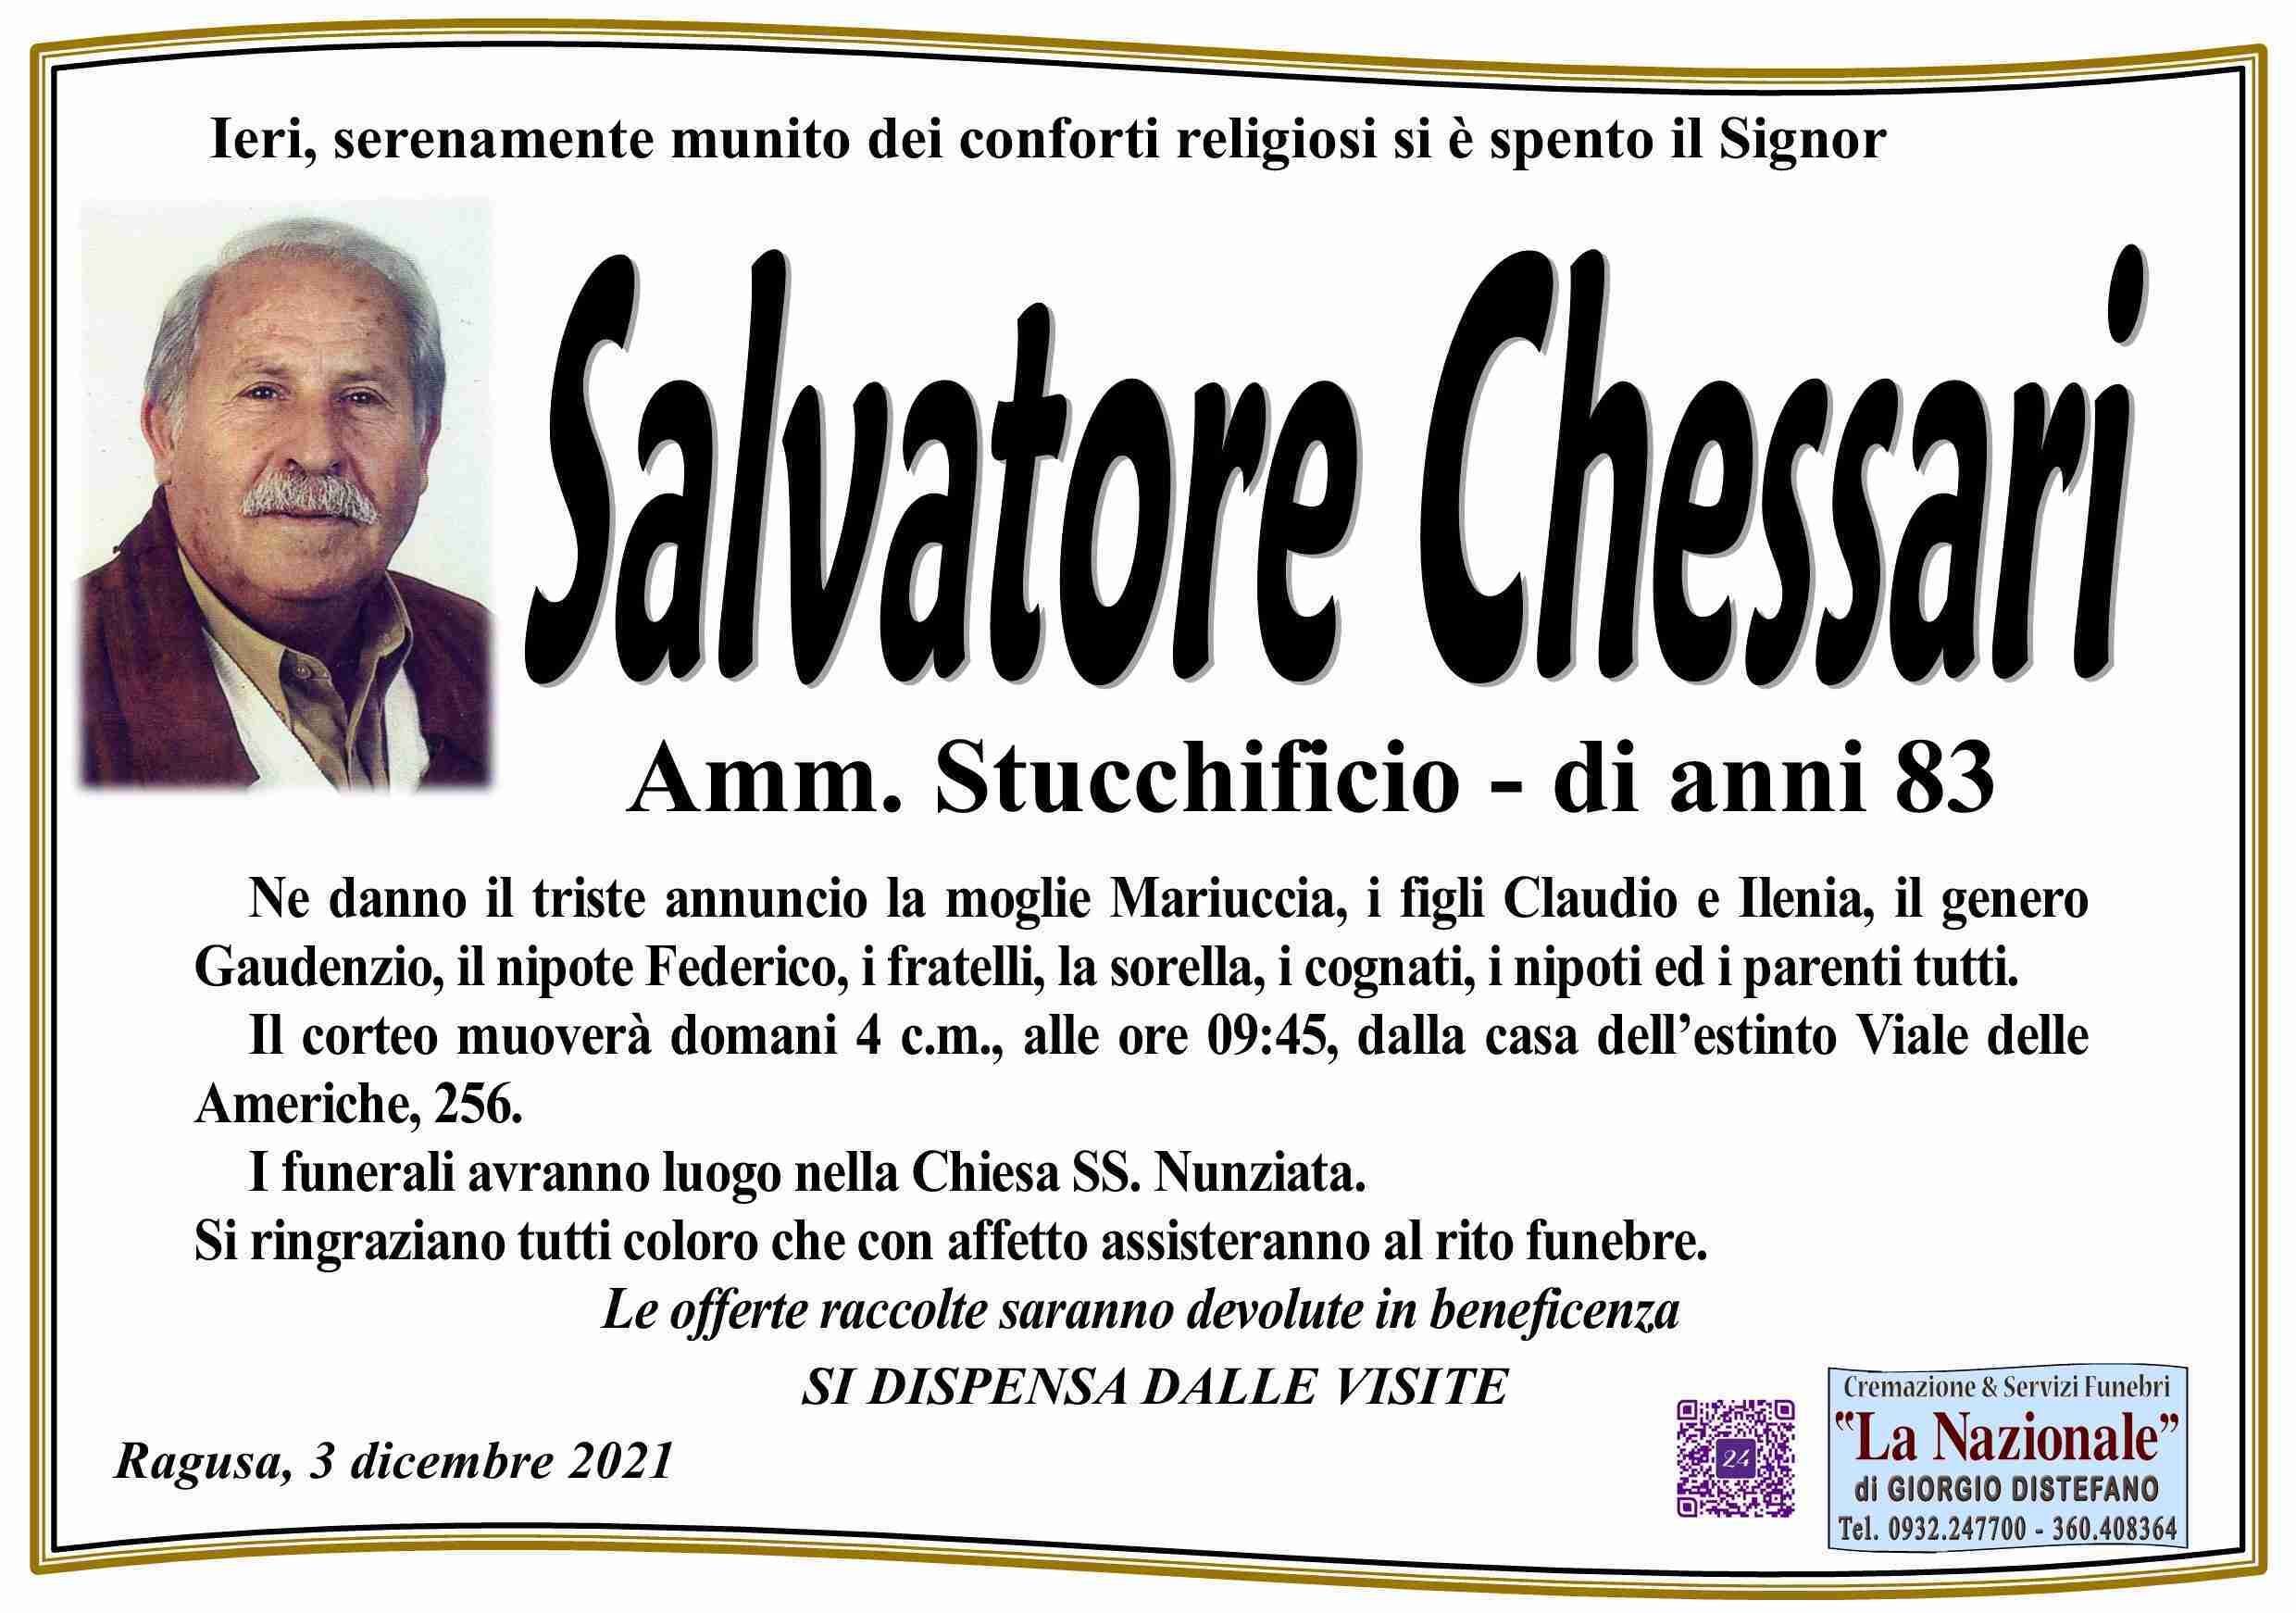 Salvatore Chessari